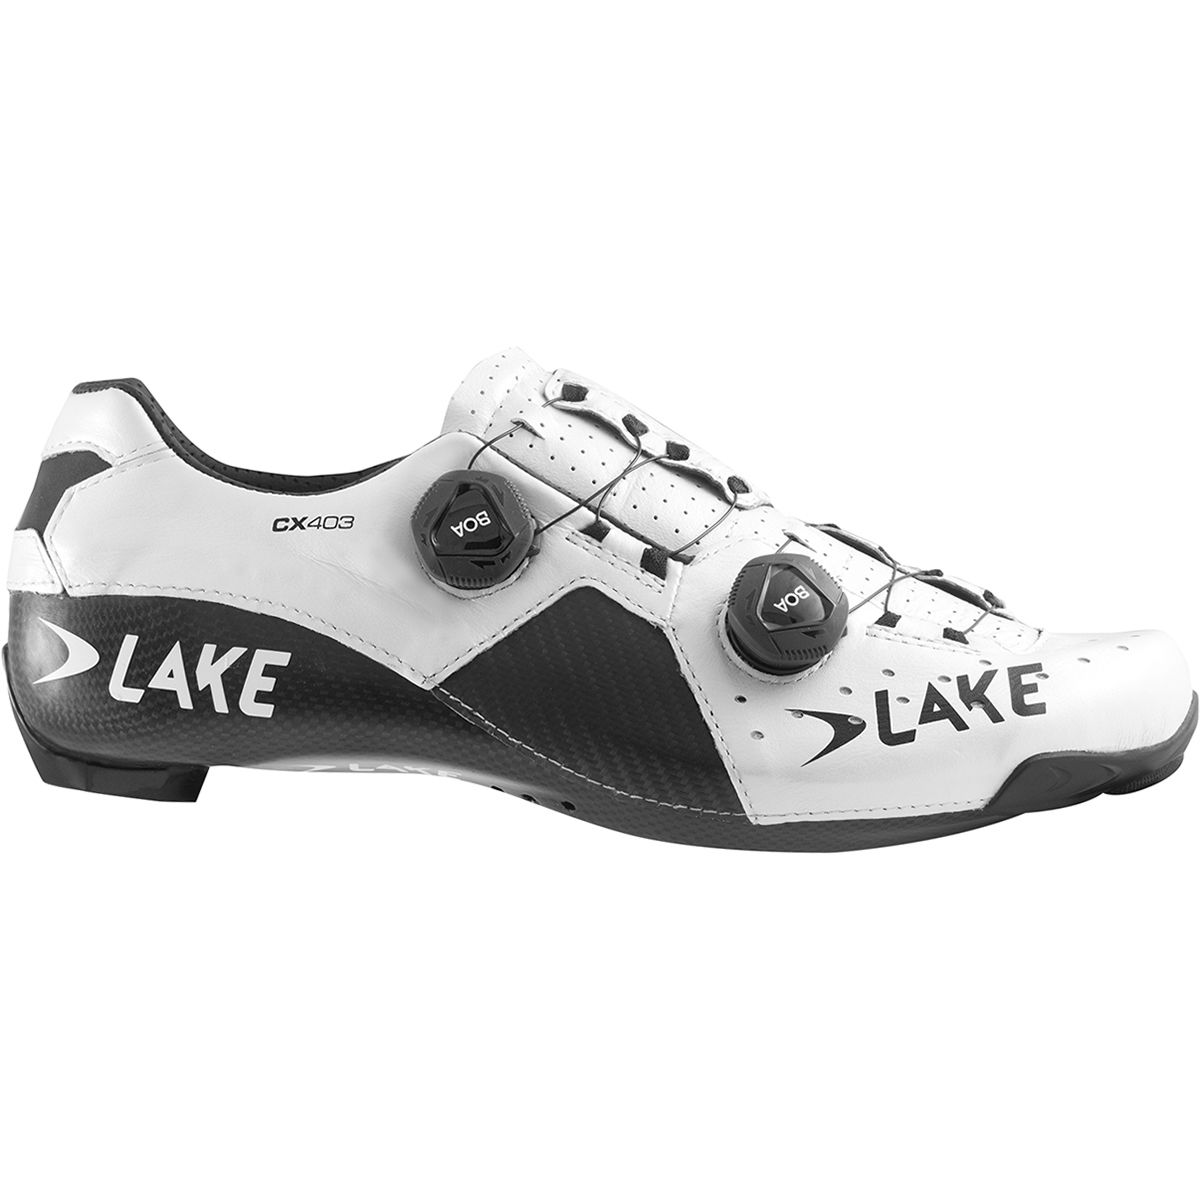 Lake CX403 Cycling Shoe - Women's White/Black, 38.0